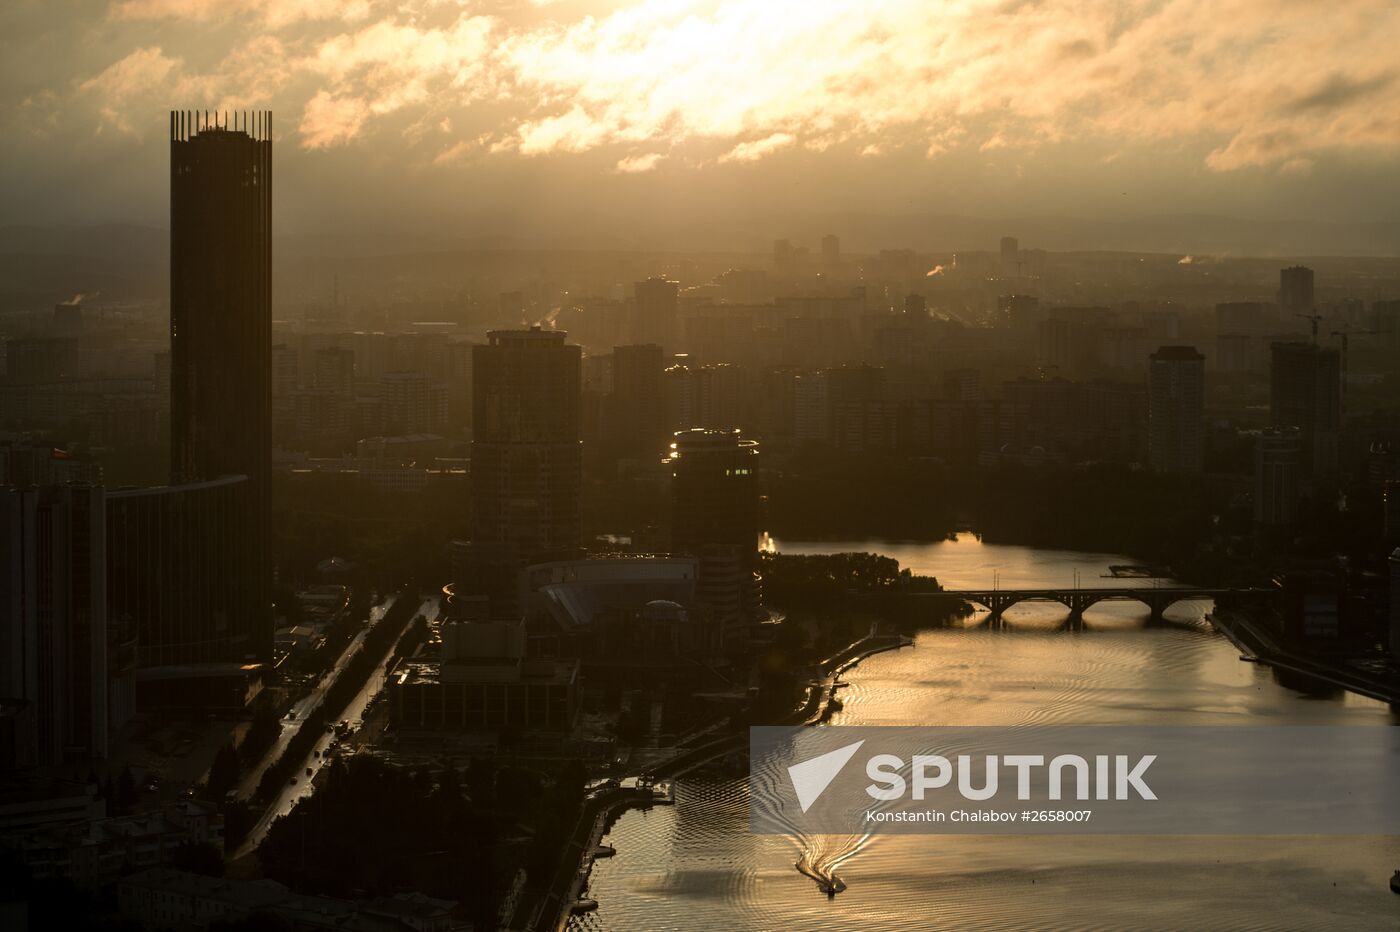 Cities of Russia. Yekaterinburg